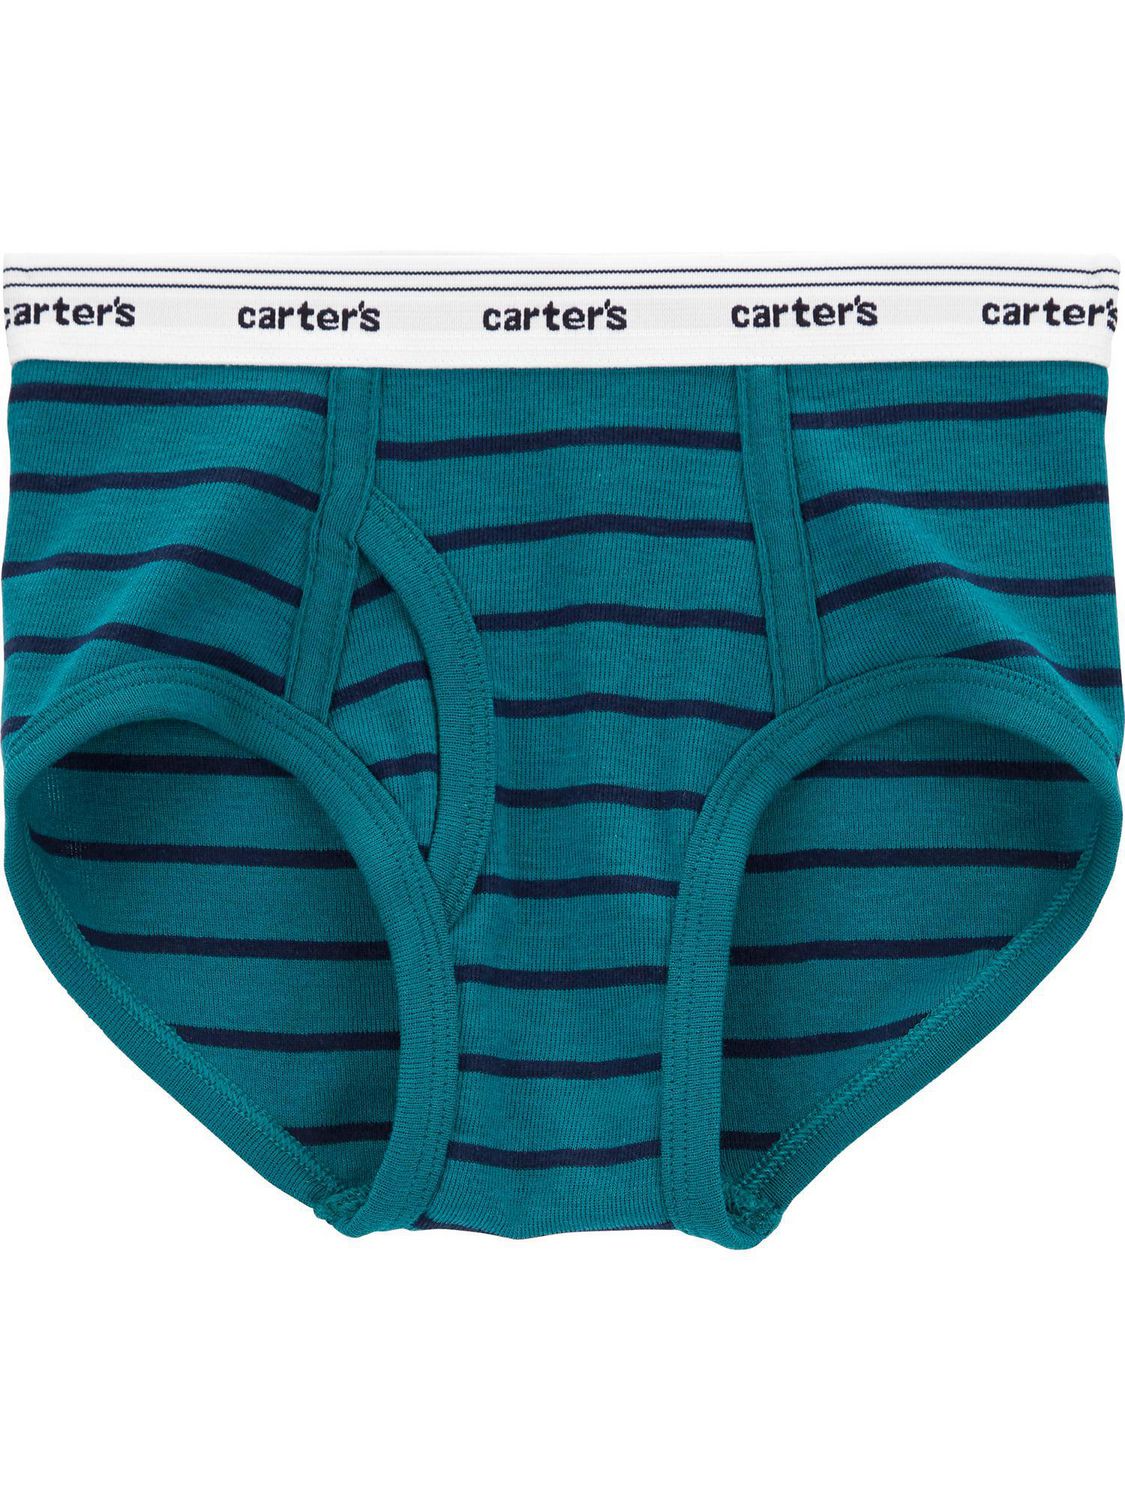 Carter's Child of Mine Toddler Boys' Underwear - Dino, 2T-5T 